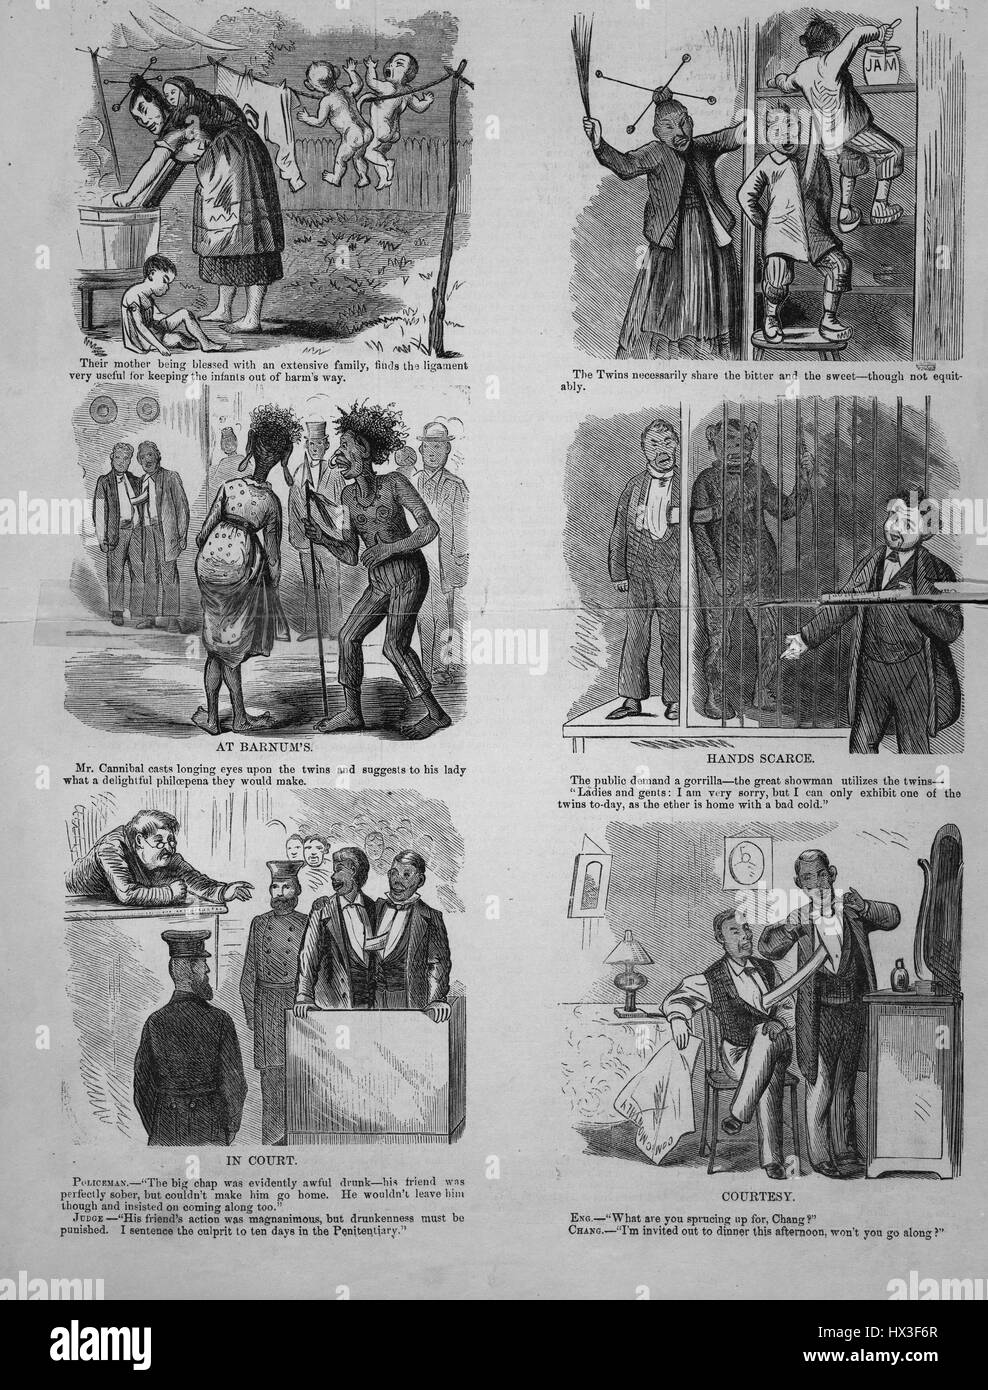 Sechs Bilder Darstellung verschiedener Ereignisse im Leben der siamesischen Zwillinge Chang und Eng Bunker, 1865. Stockfoto